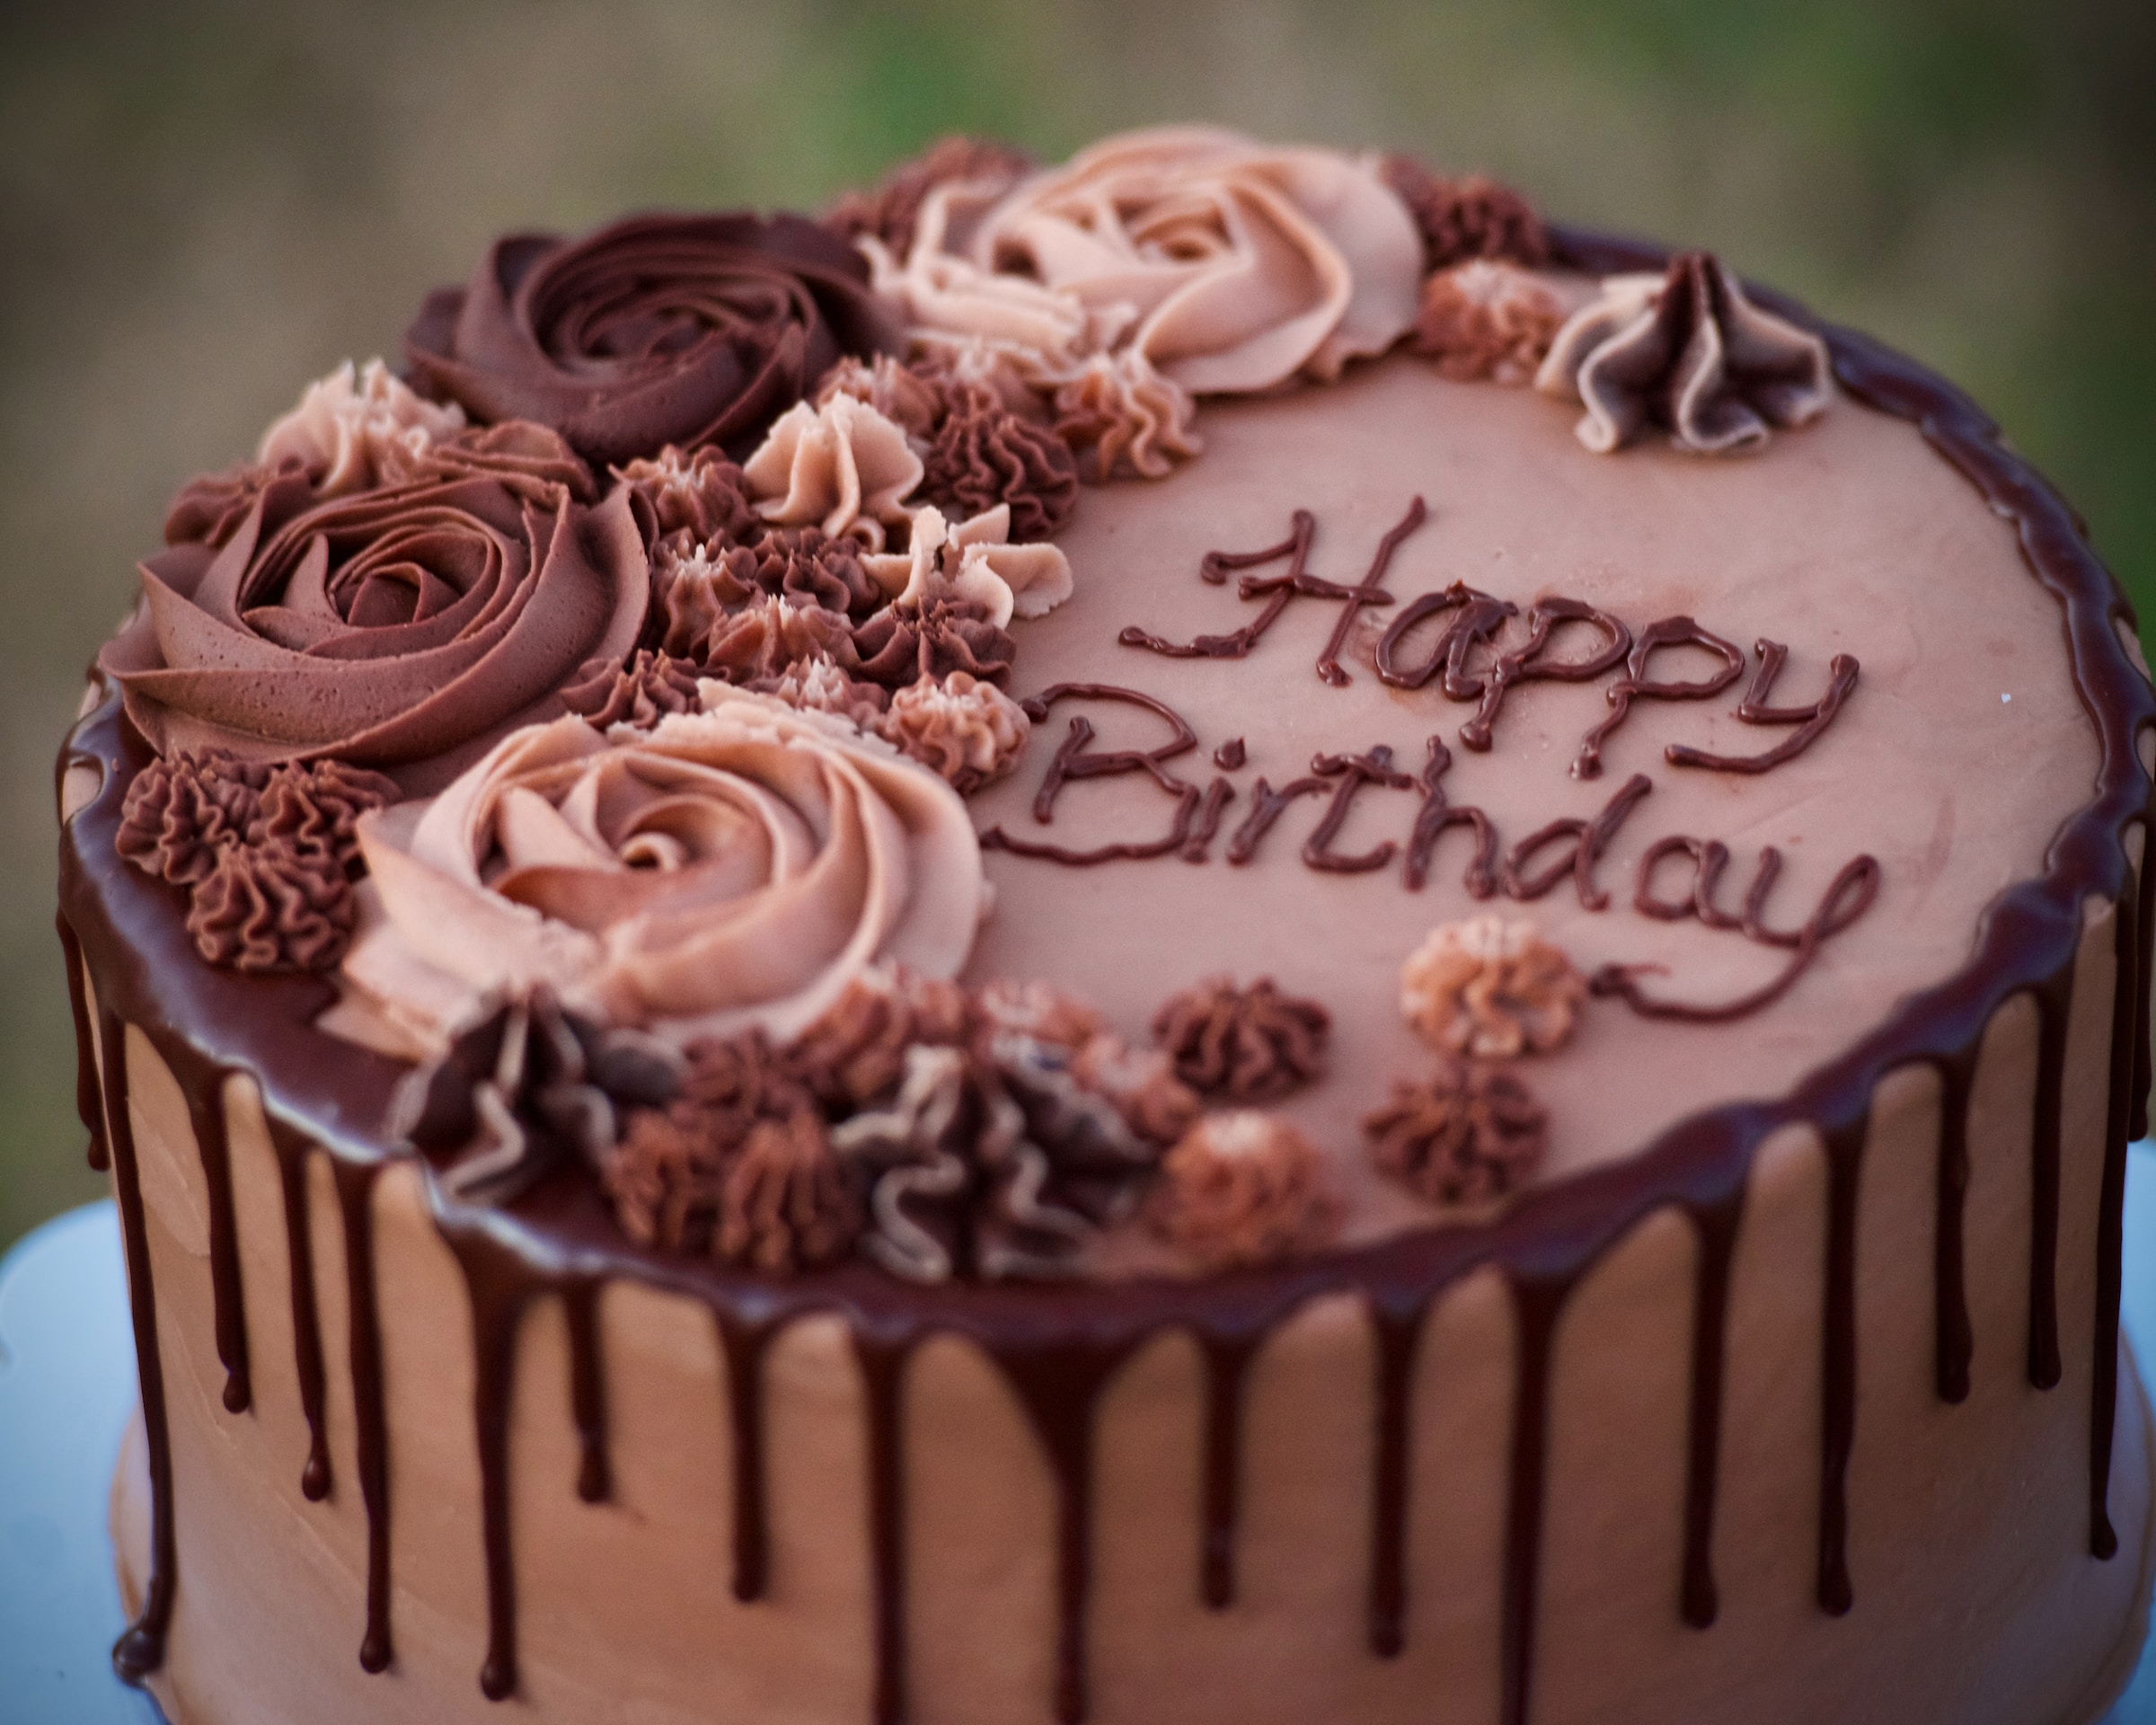 Un gâteau d'anniversaire | Source : Unsplash